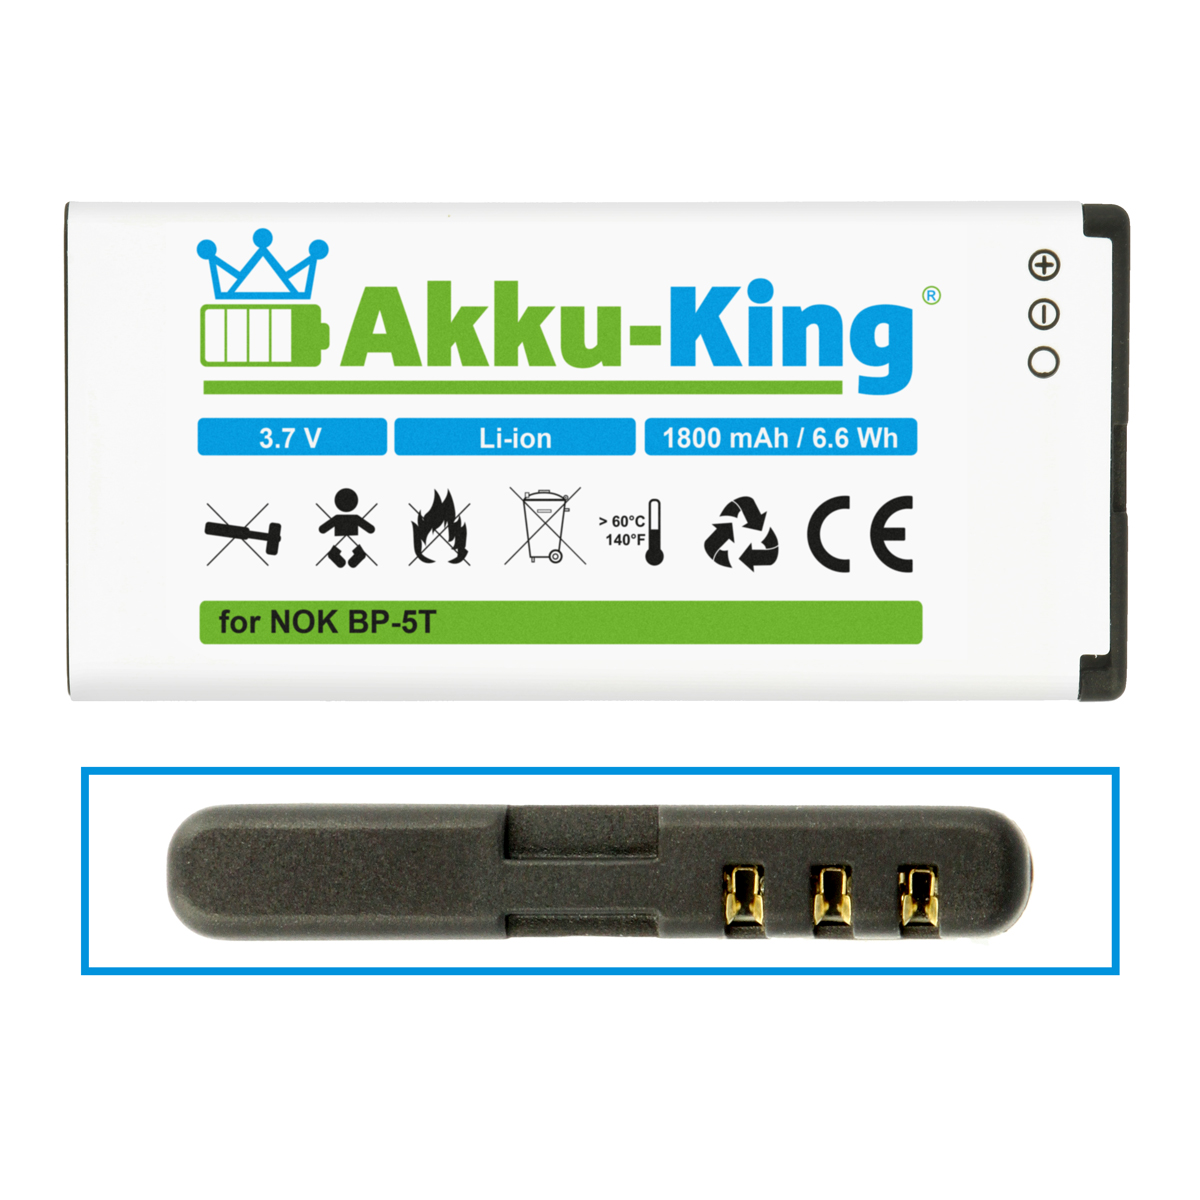 1800mAh Volt, mit BP-5T kompatibel 3.7 Akku Li-Ion Nokia AKKU-KING Handy-Akku,